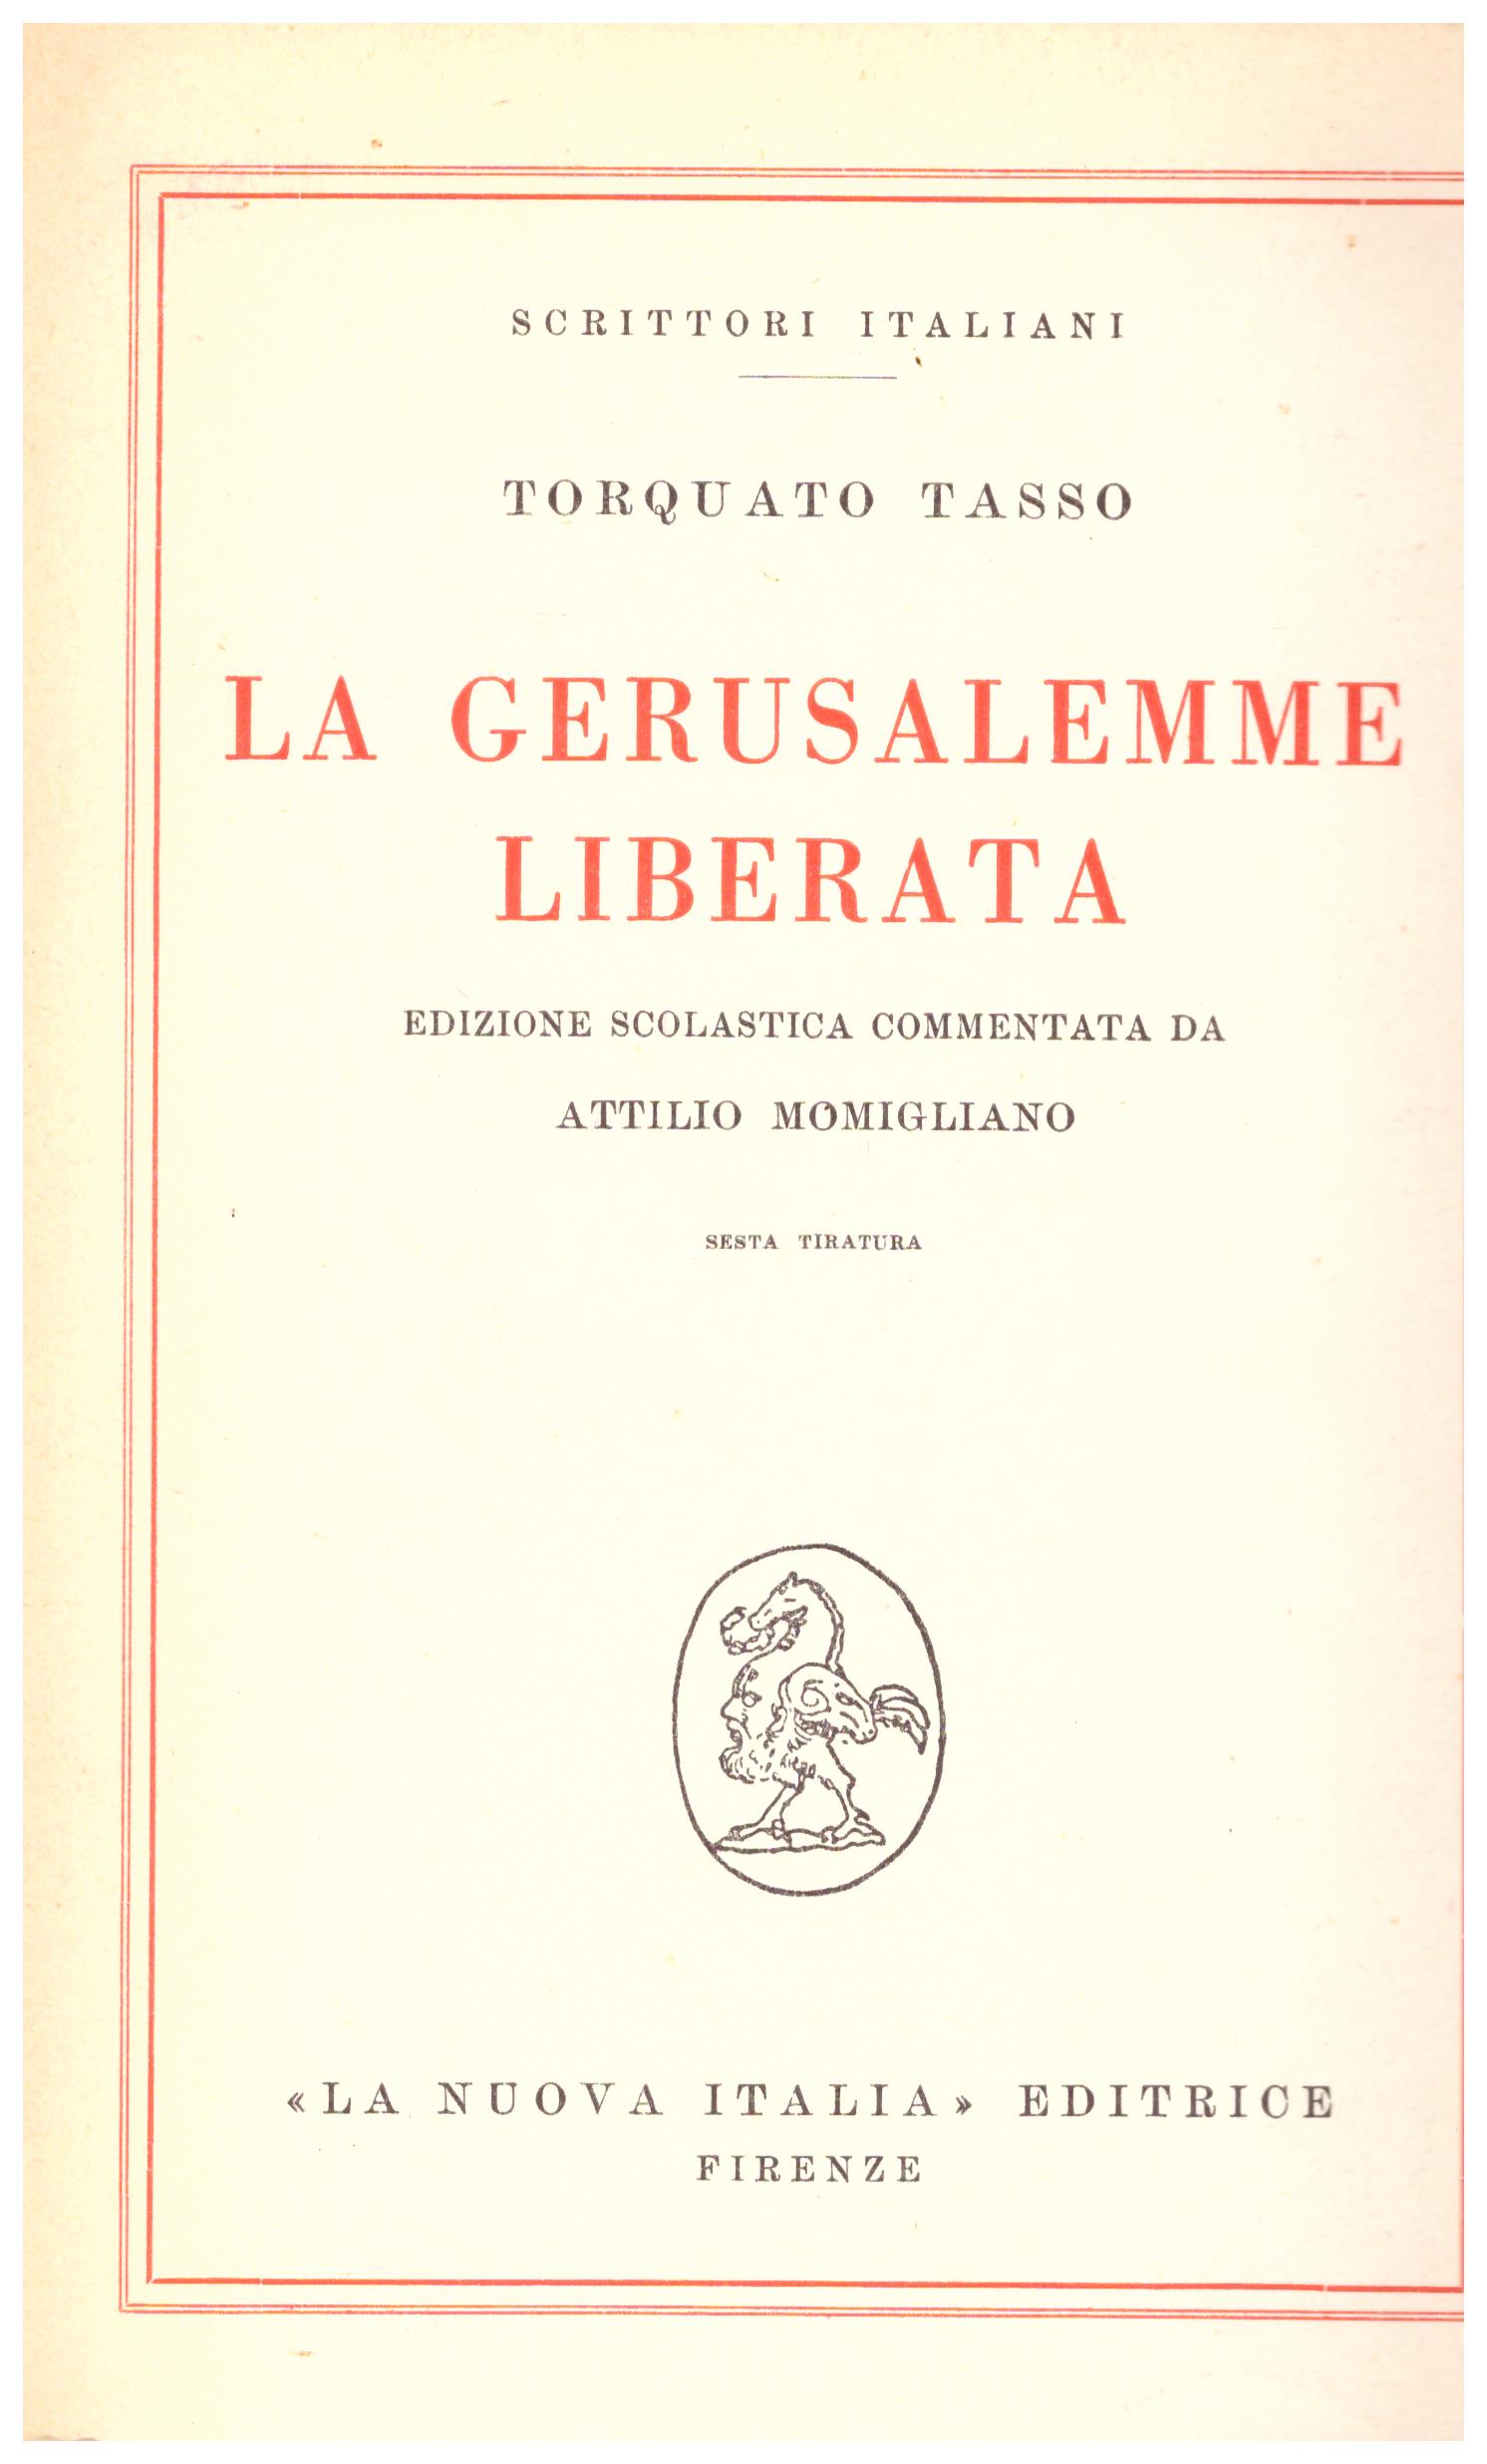 Titolo: La Gerusalemme liberata    Autore: Torquato Tasso    Editore: La nuova italia 1955, sesta tiratura N. 1843